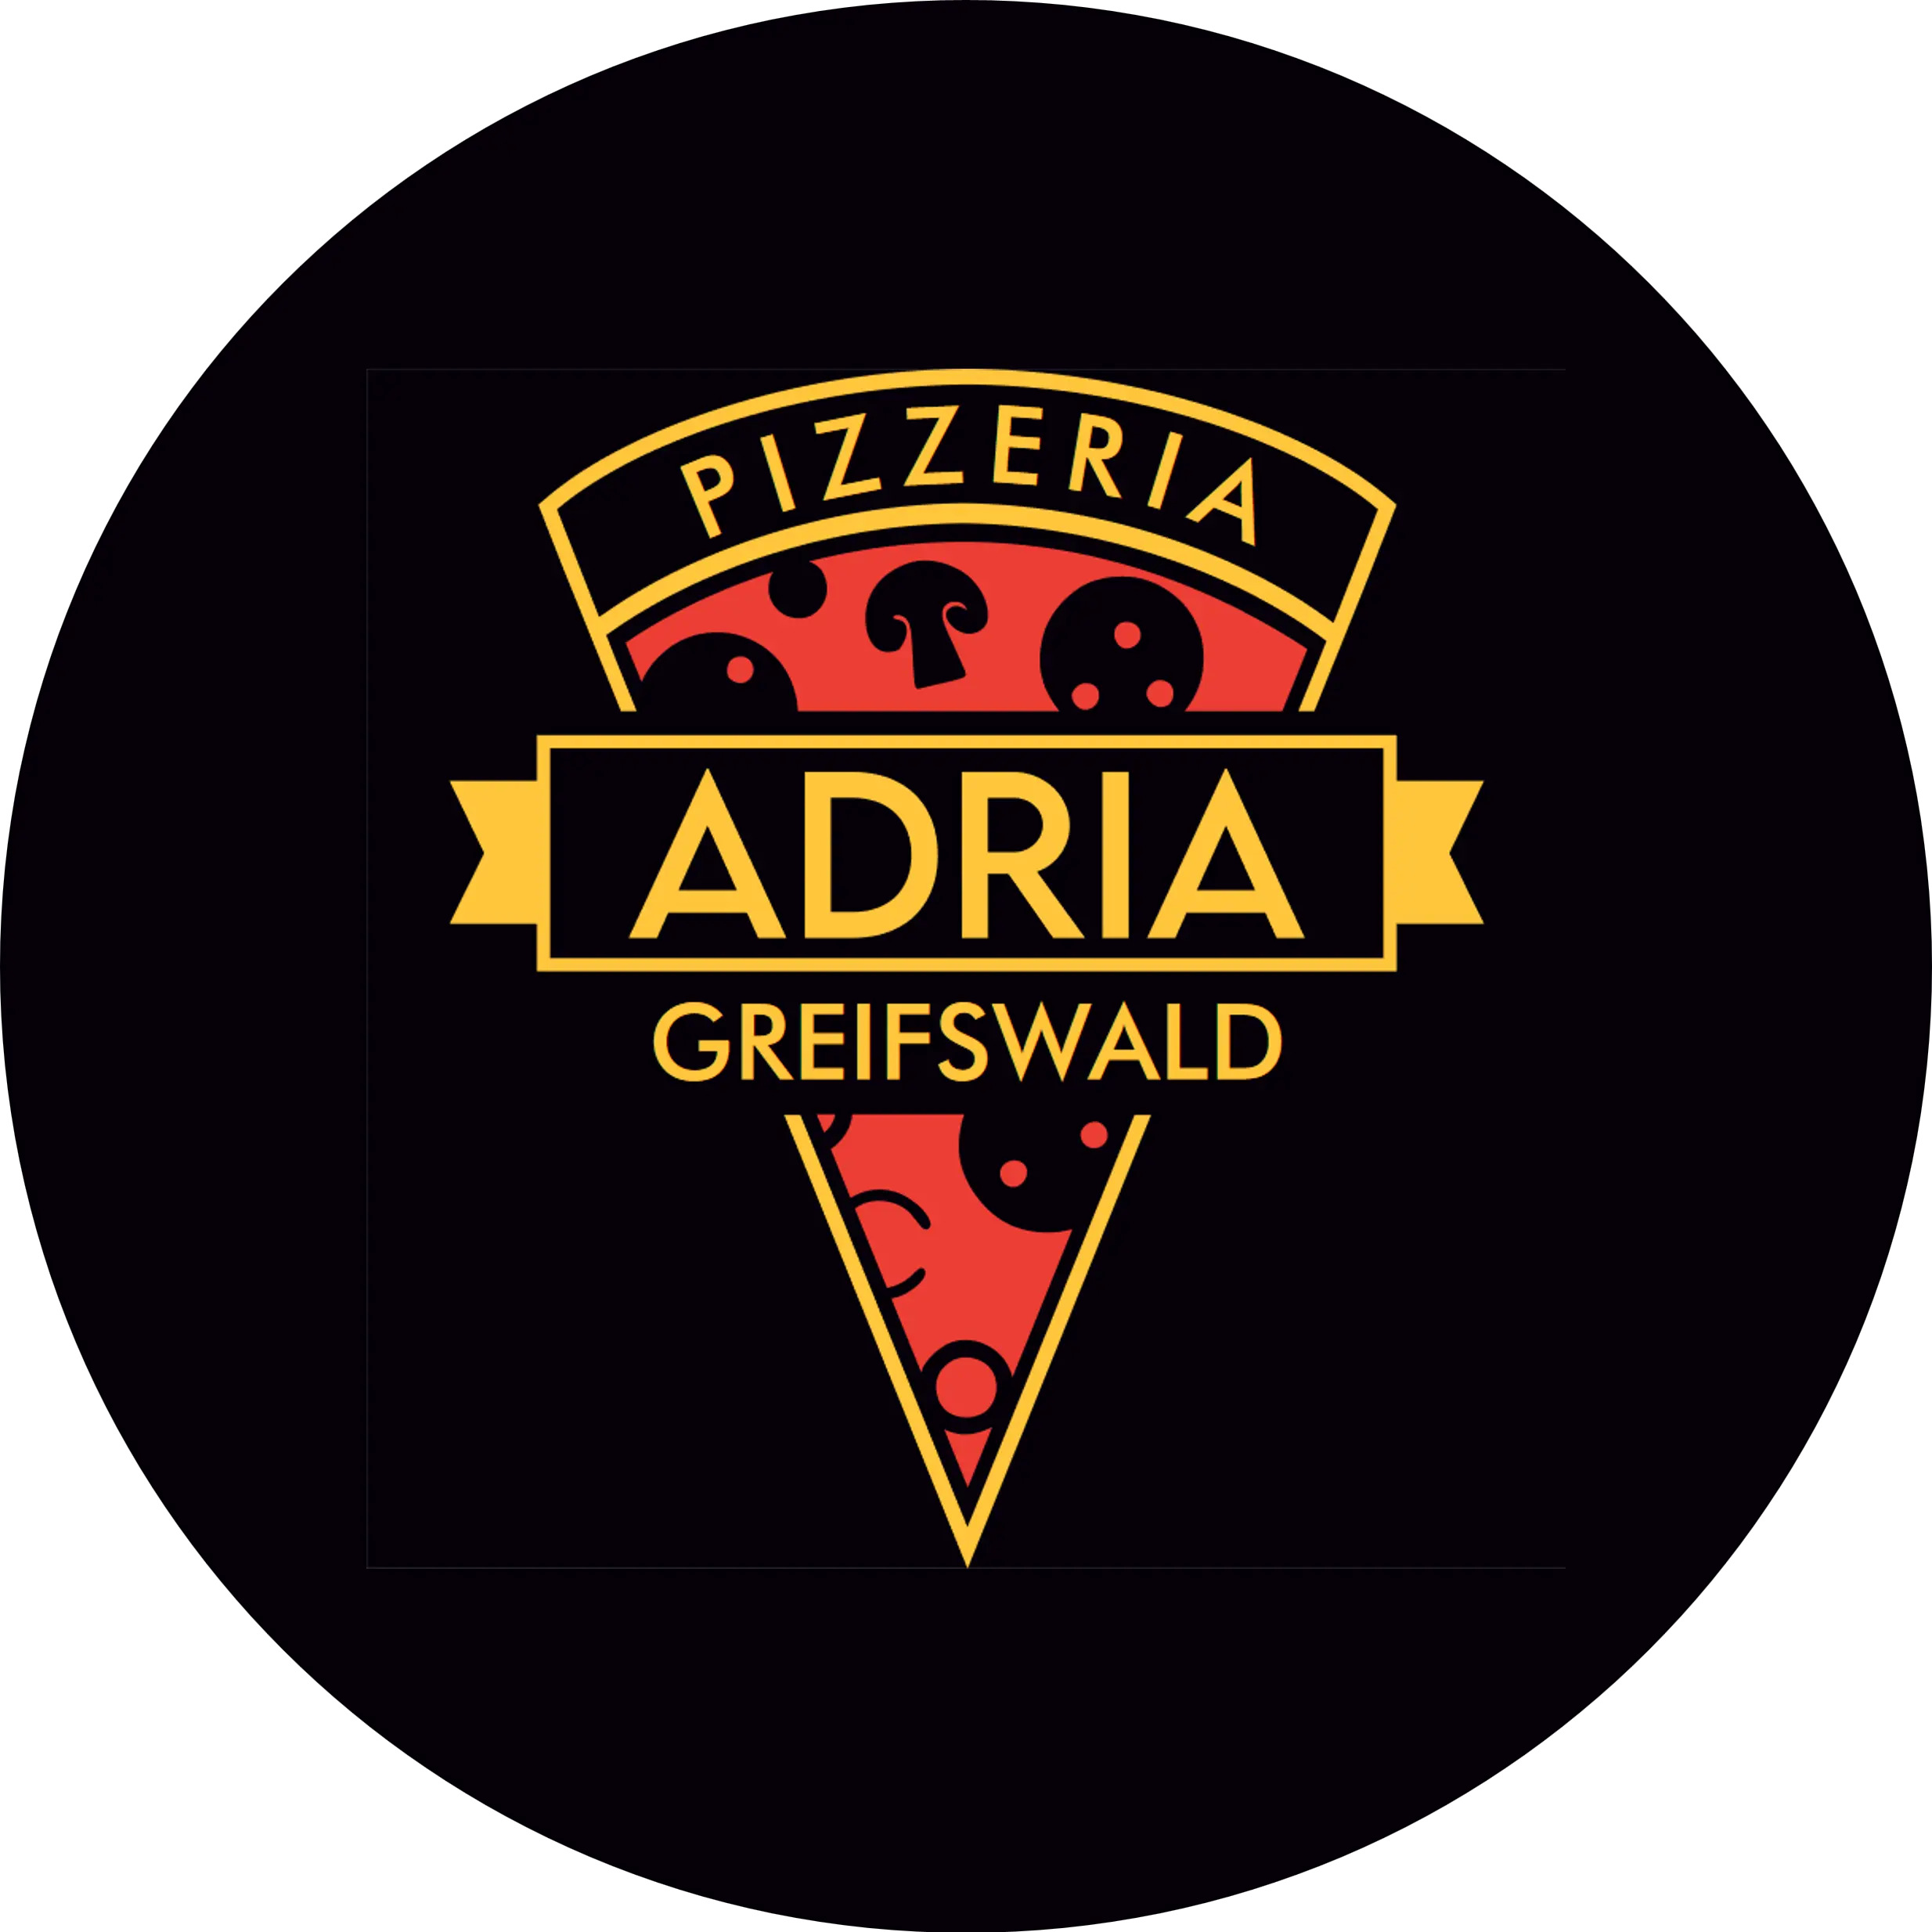 Pizzeria Adria in Greifswald - Logo